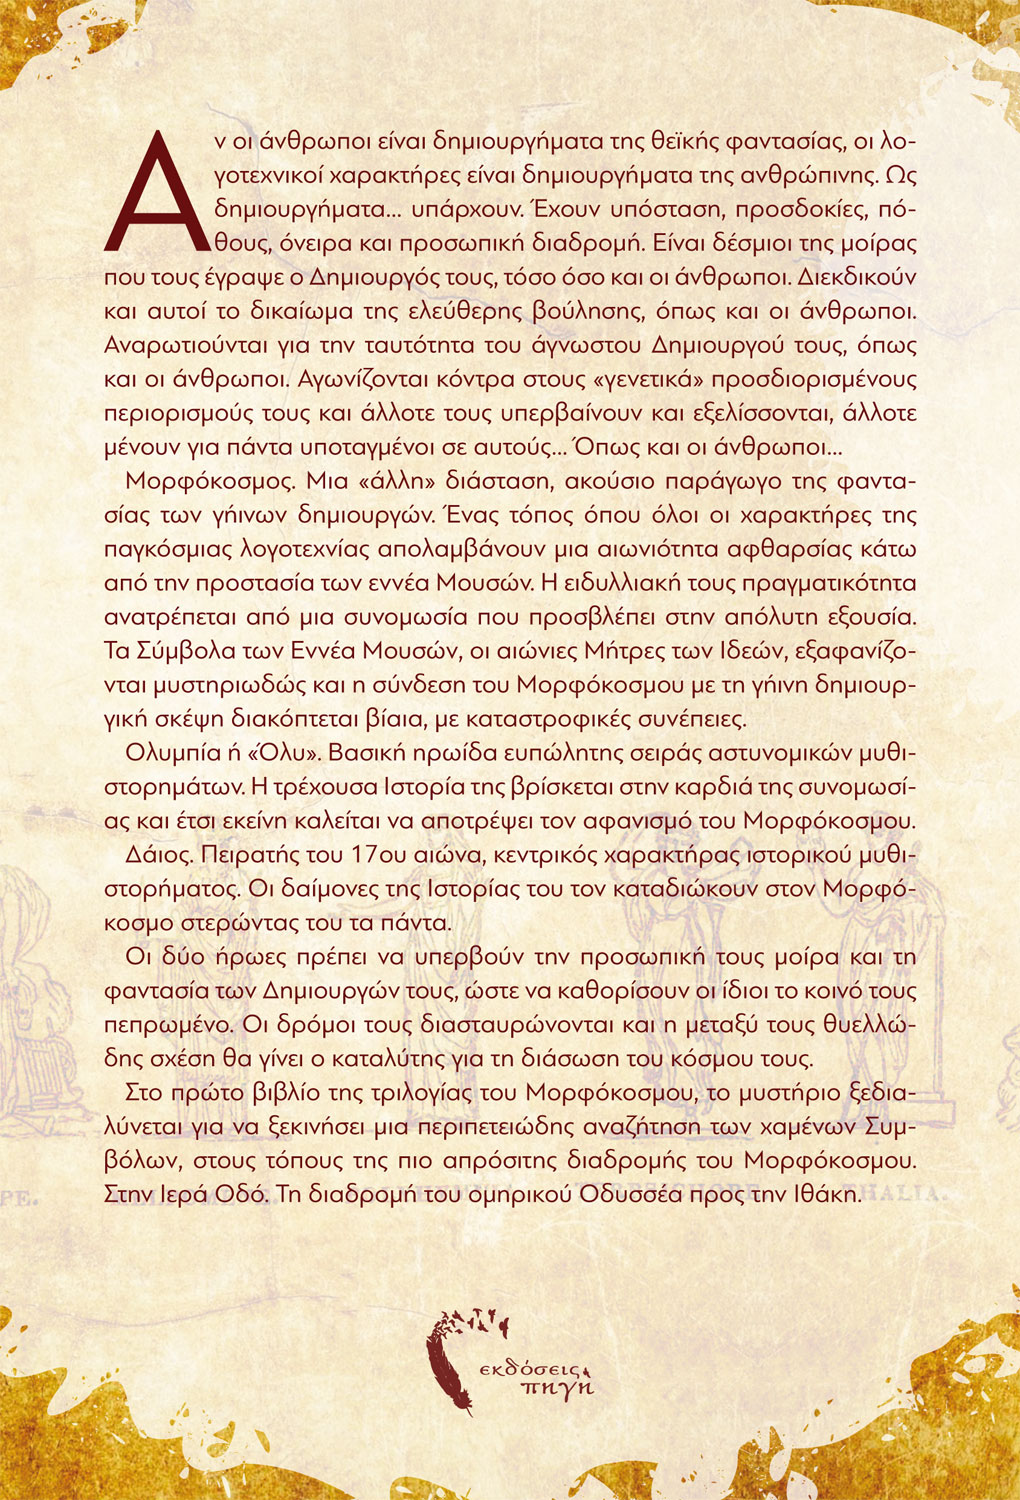 Μορφόκοσμος, Έλενα Γκίκα, Εκδόσεις Πηγή - www.pigi.gr